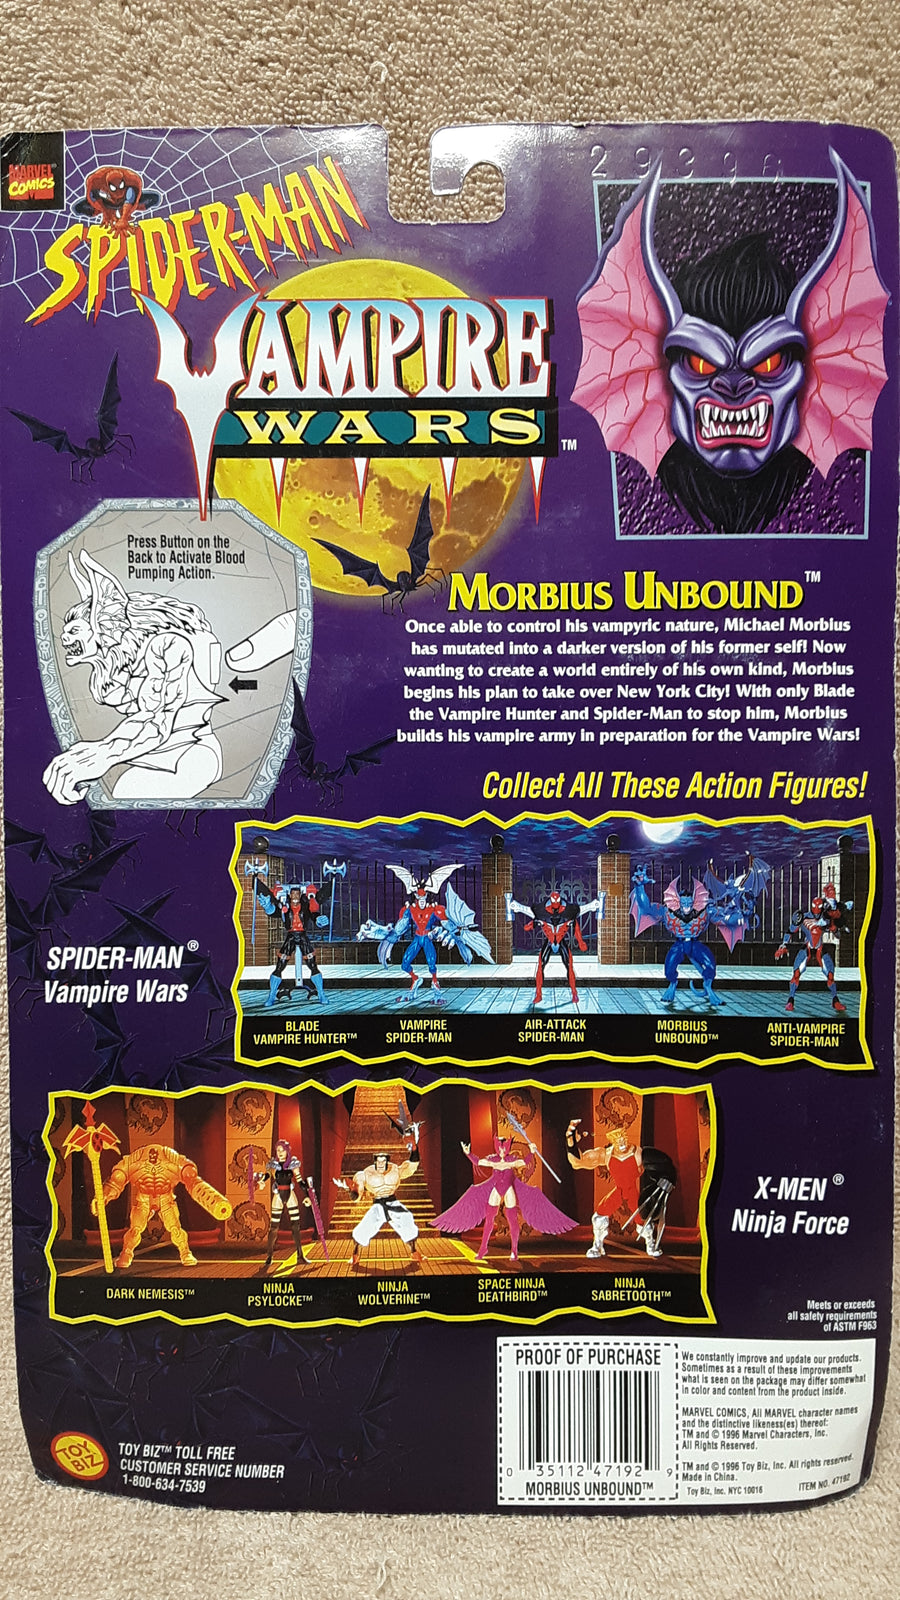 Morbius Unbound - Spider-Man Vampire Wars MOC action figure 